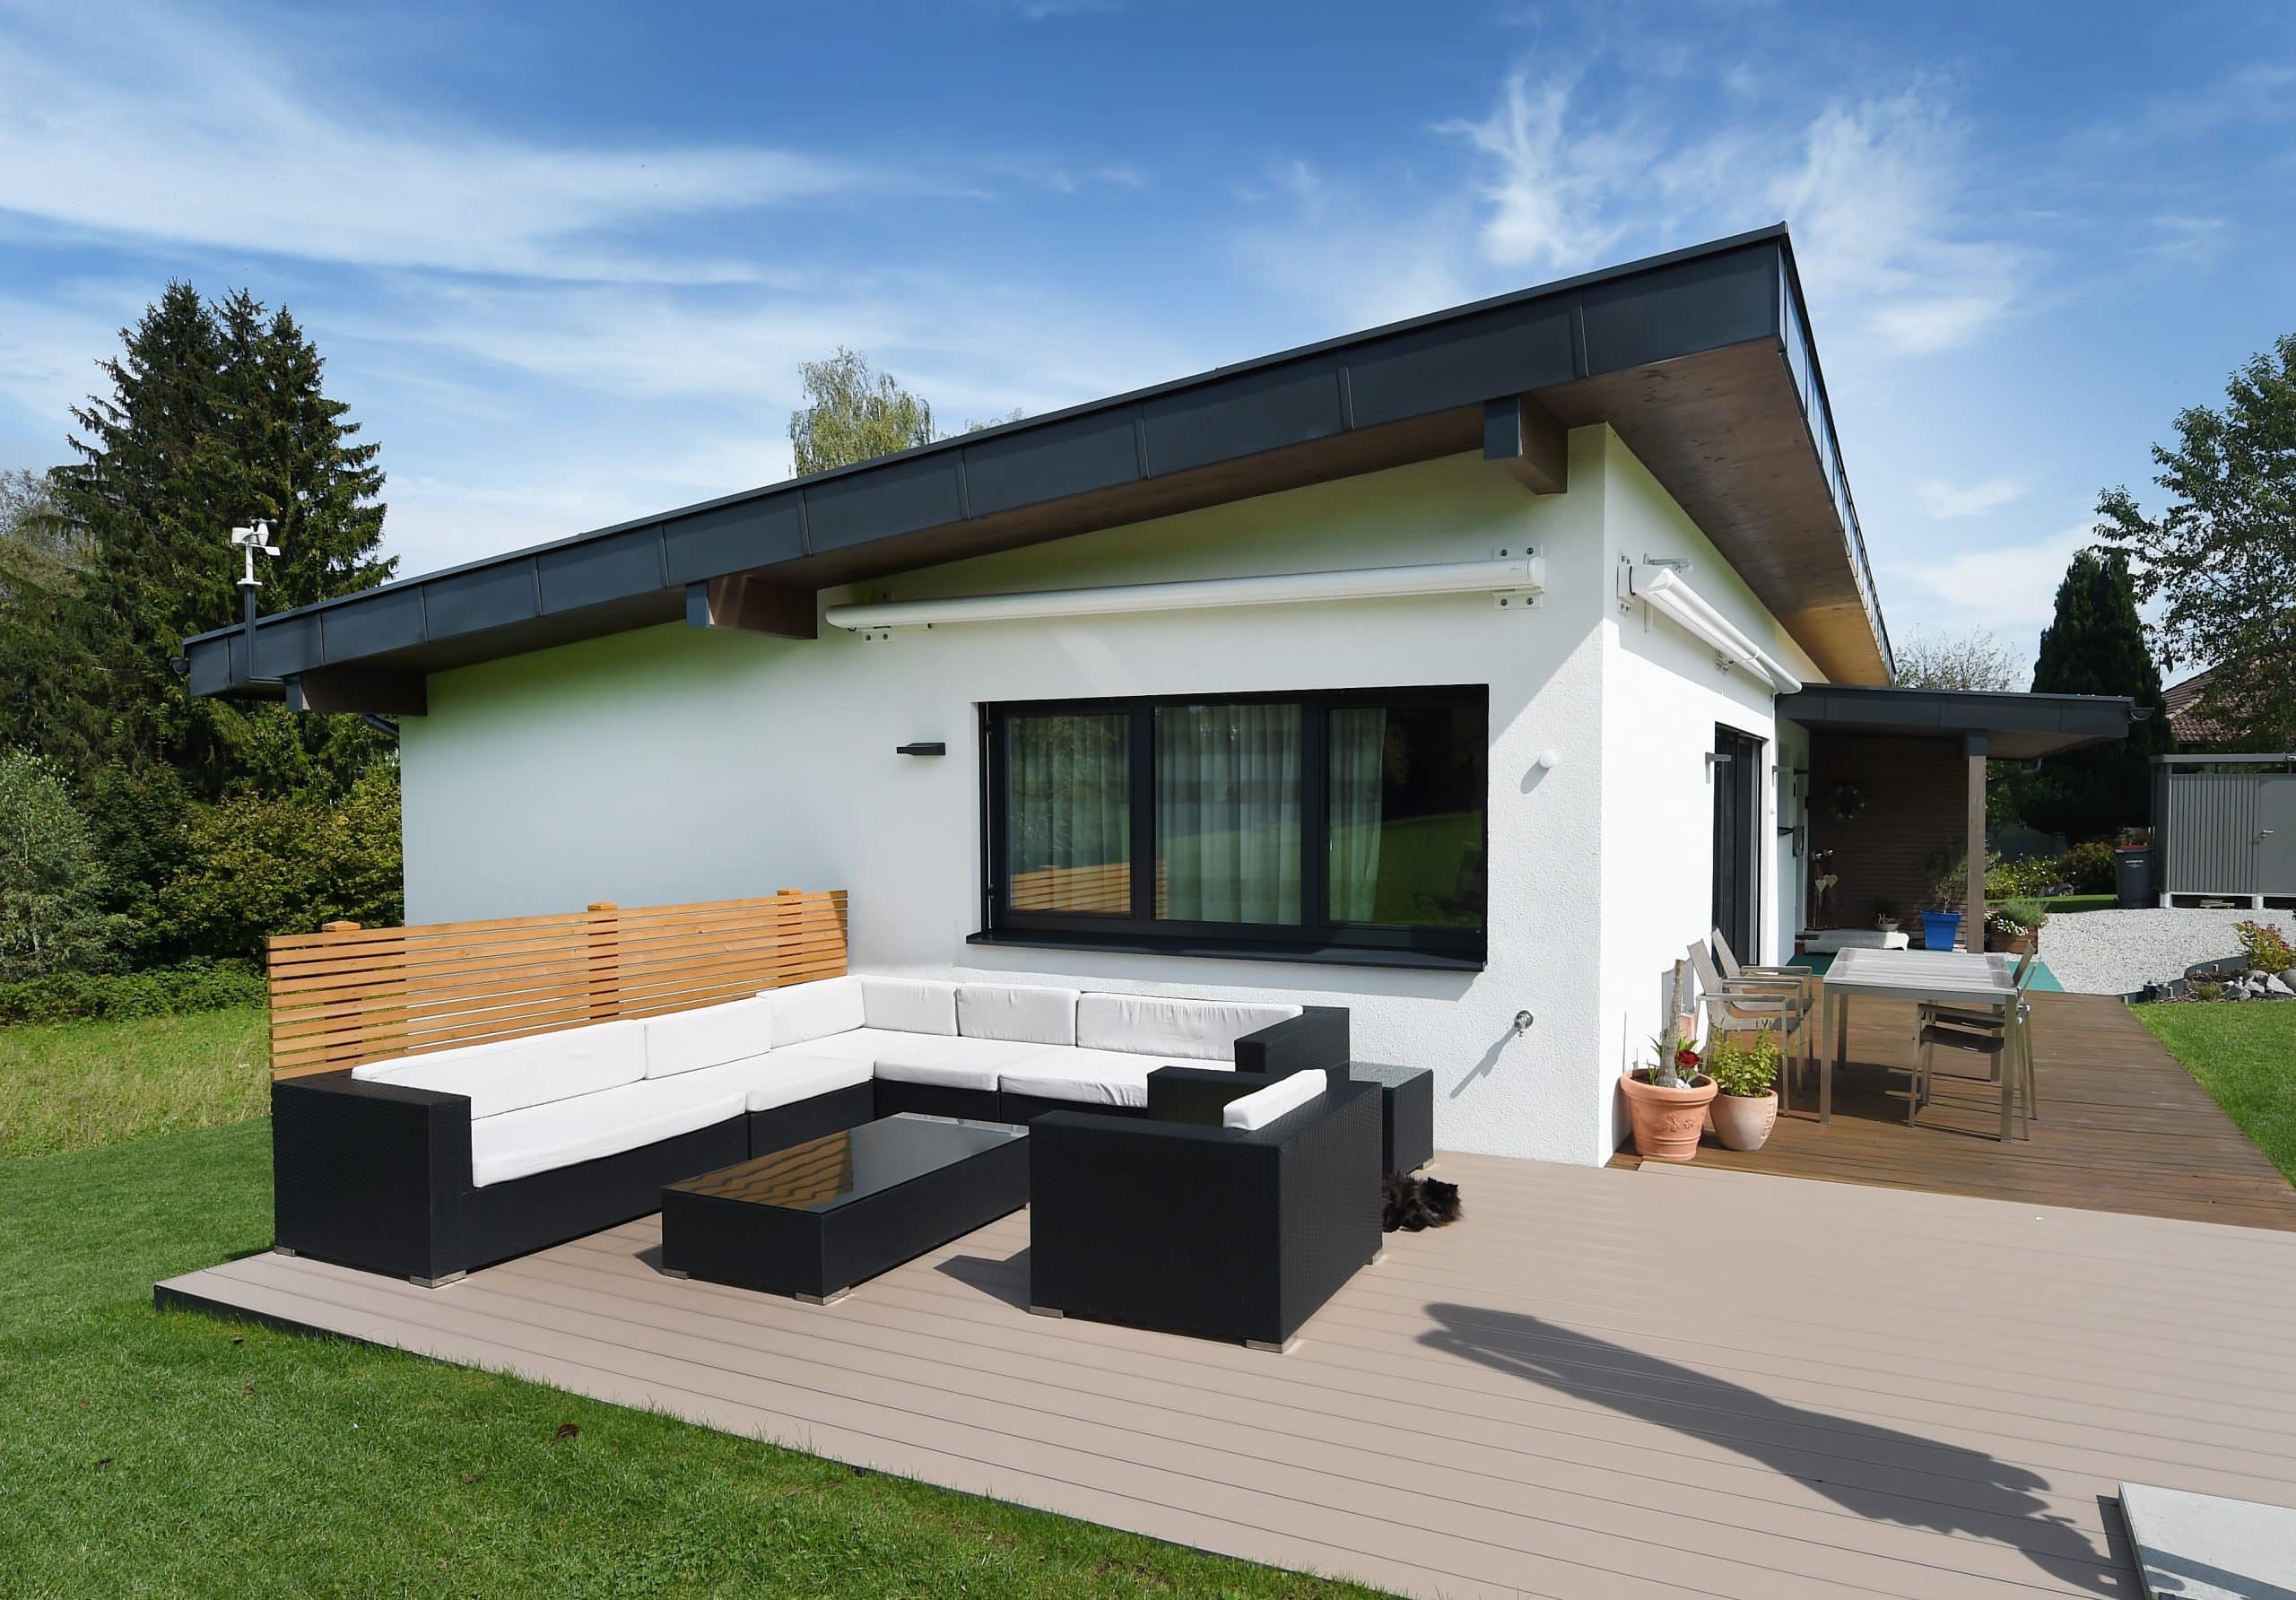 Ein modernes weisses Haus mit Flachdach und Terrasse mit gemütlicher Sitzlounge auf Holzboden von ERLER BAU GmbH.